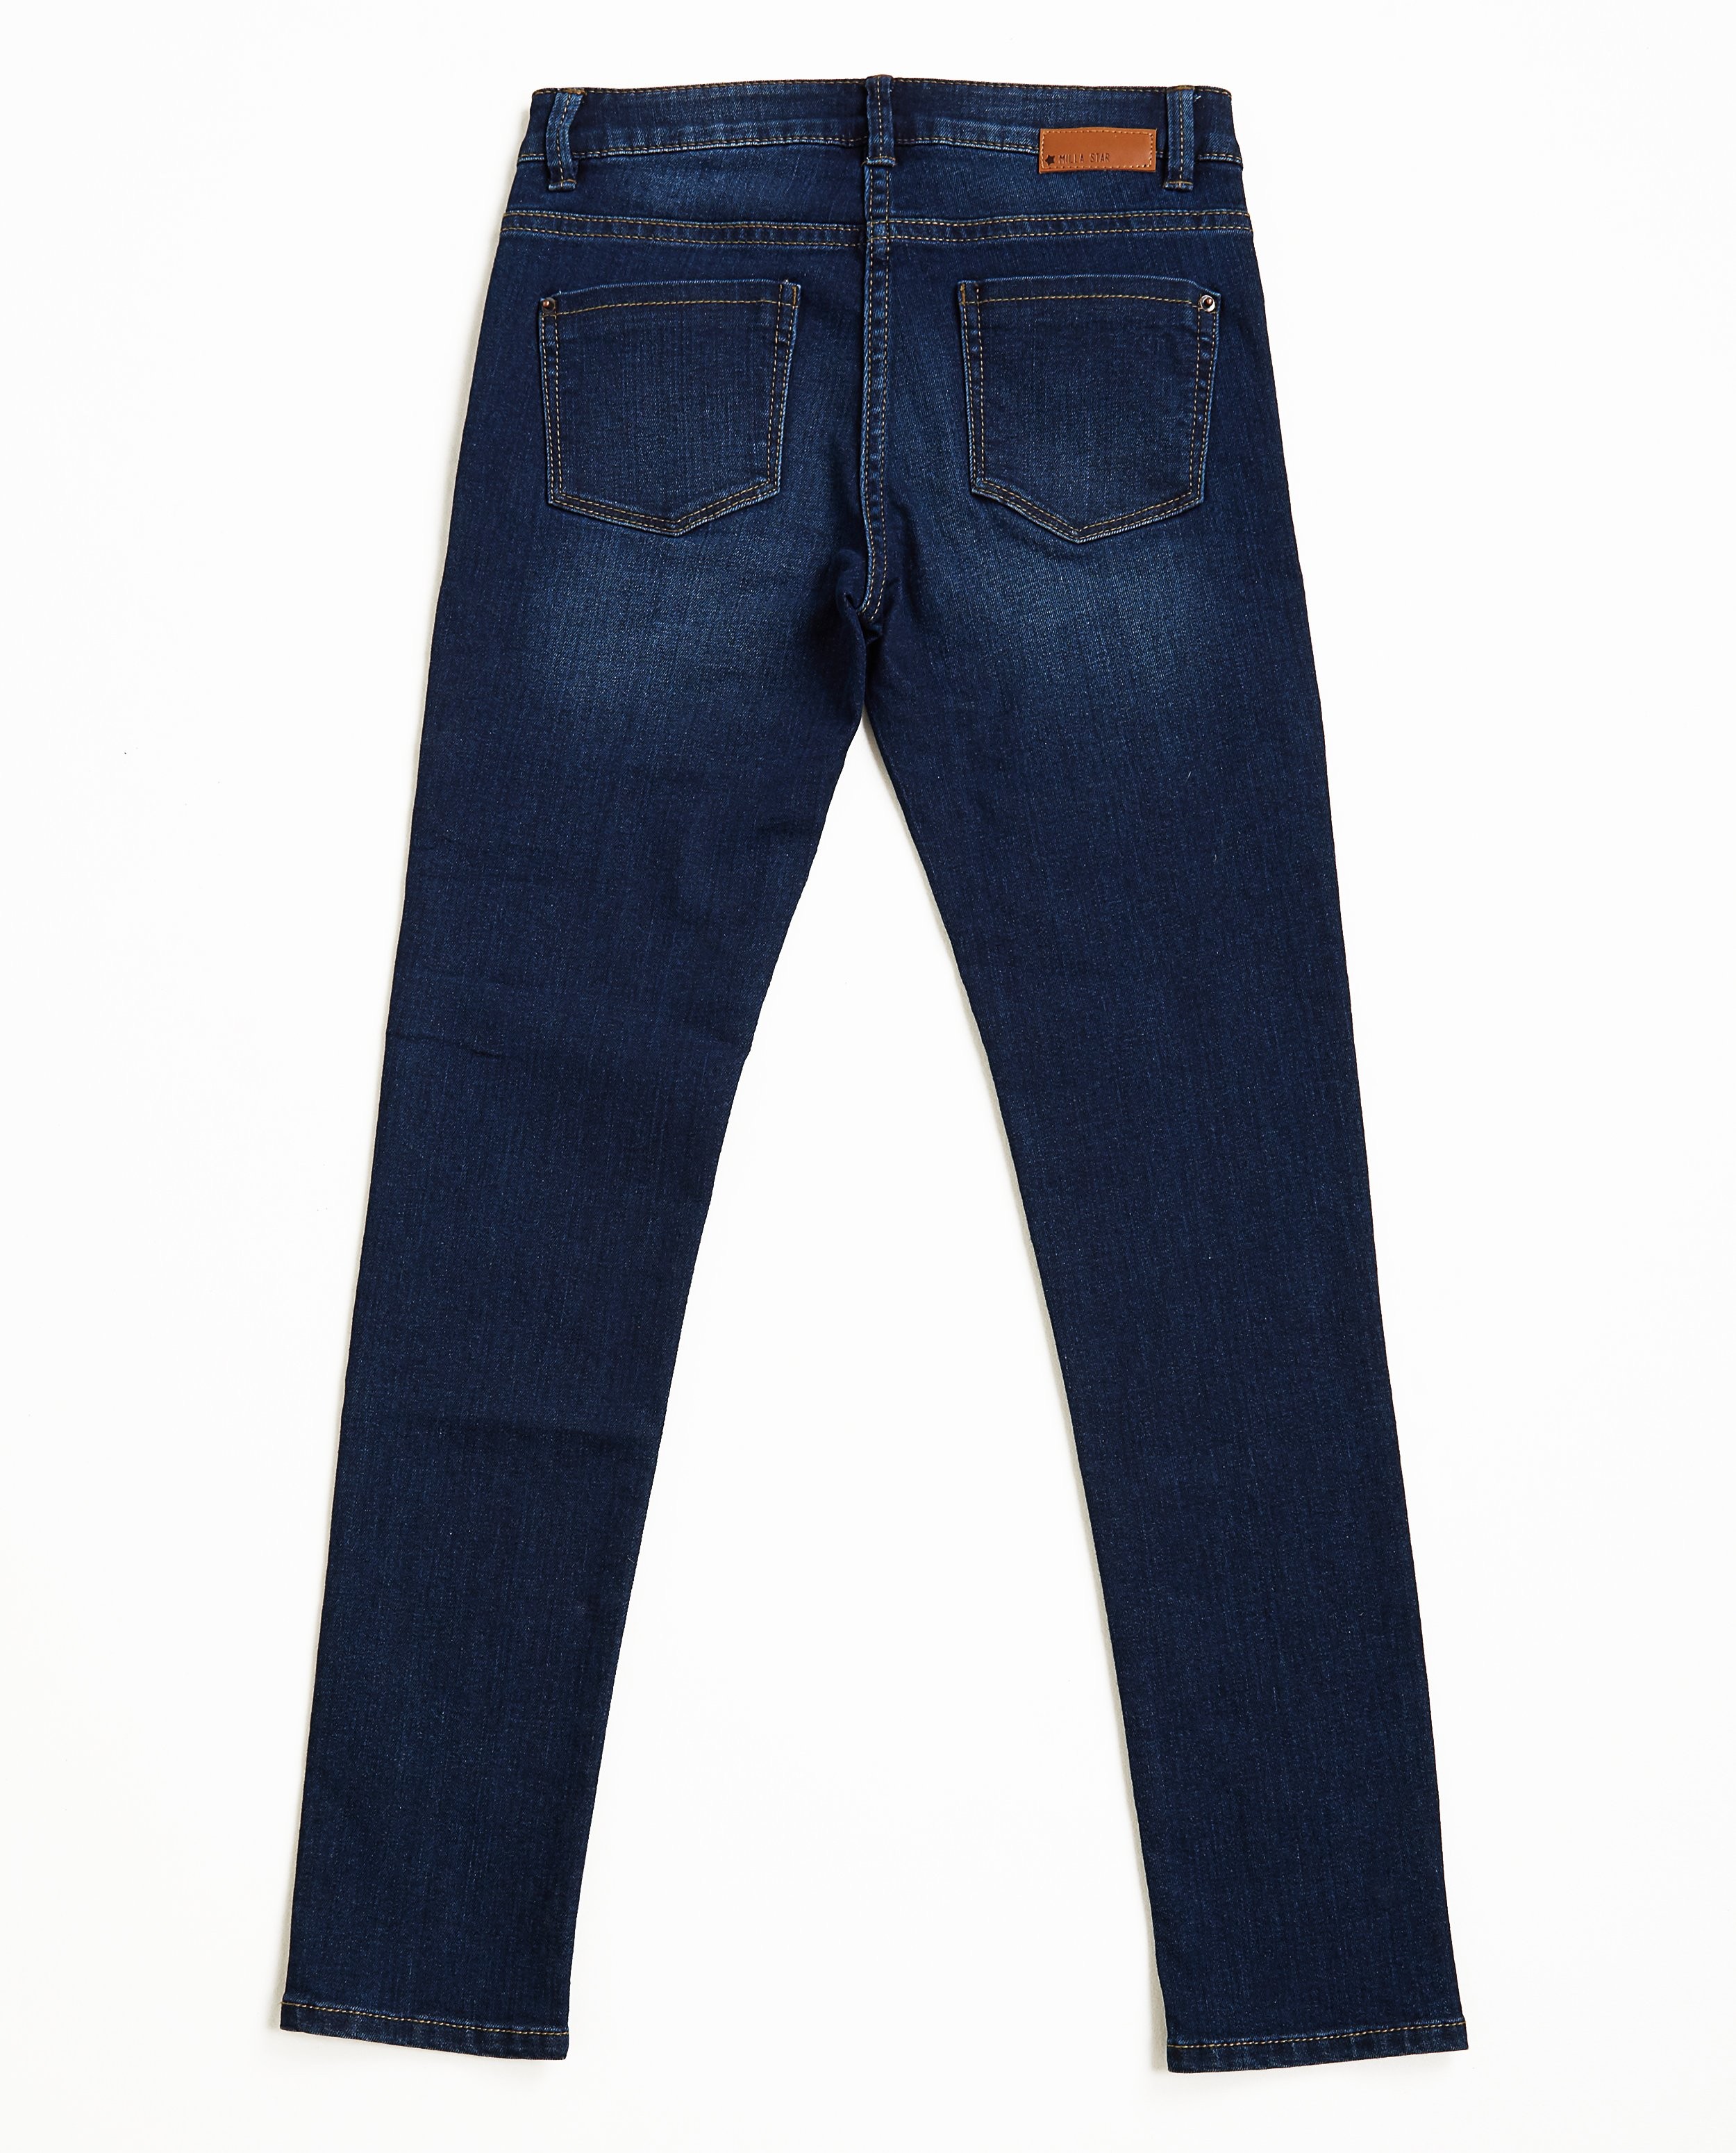 Jeans - Jeans slim bleu foncé